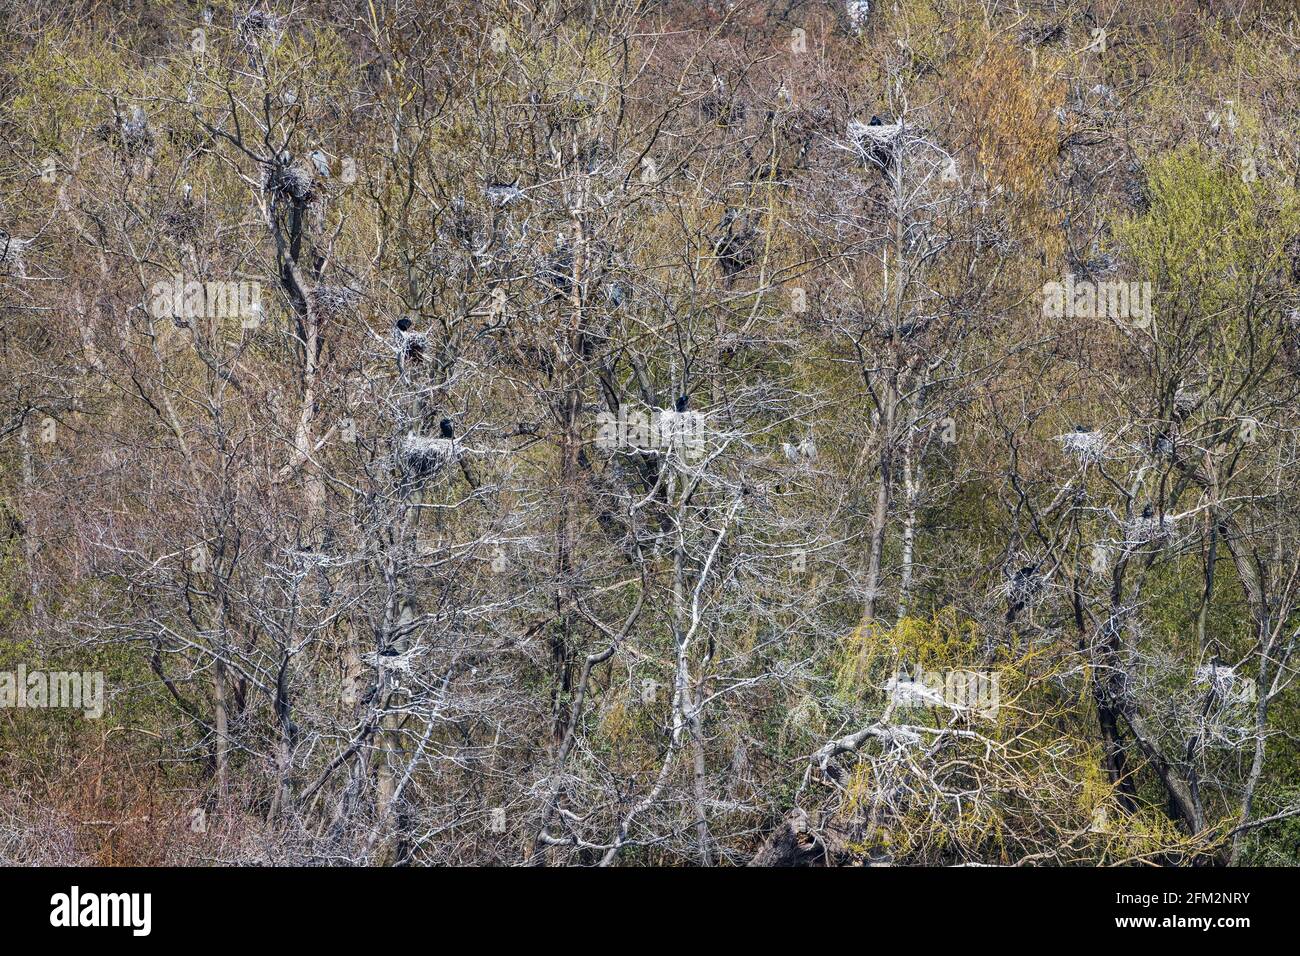 Grandi cormorani (Phalacrocorax carbo) e aironi grigi (Ardea cinerea) che si coltivano sulle rive del lago Baldeneysee, Heisingen, Essen, Germania, Europa Foto Stock